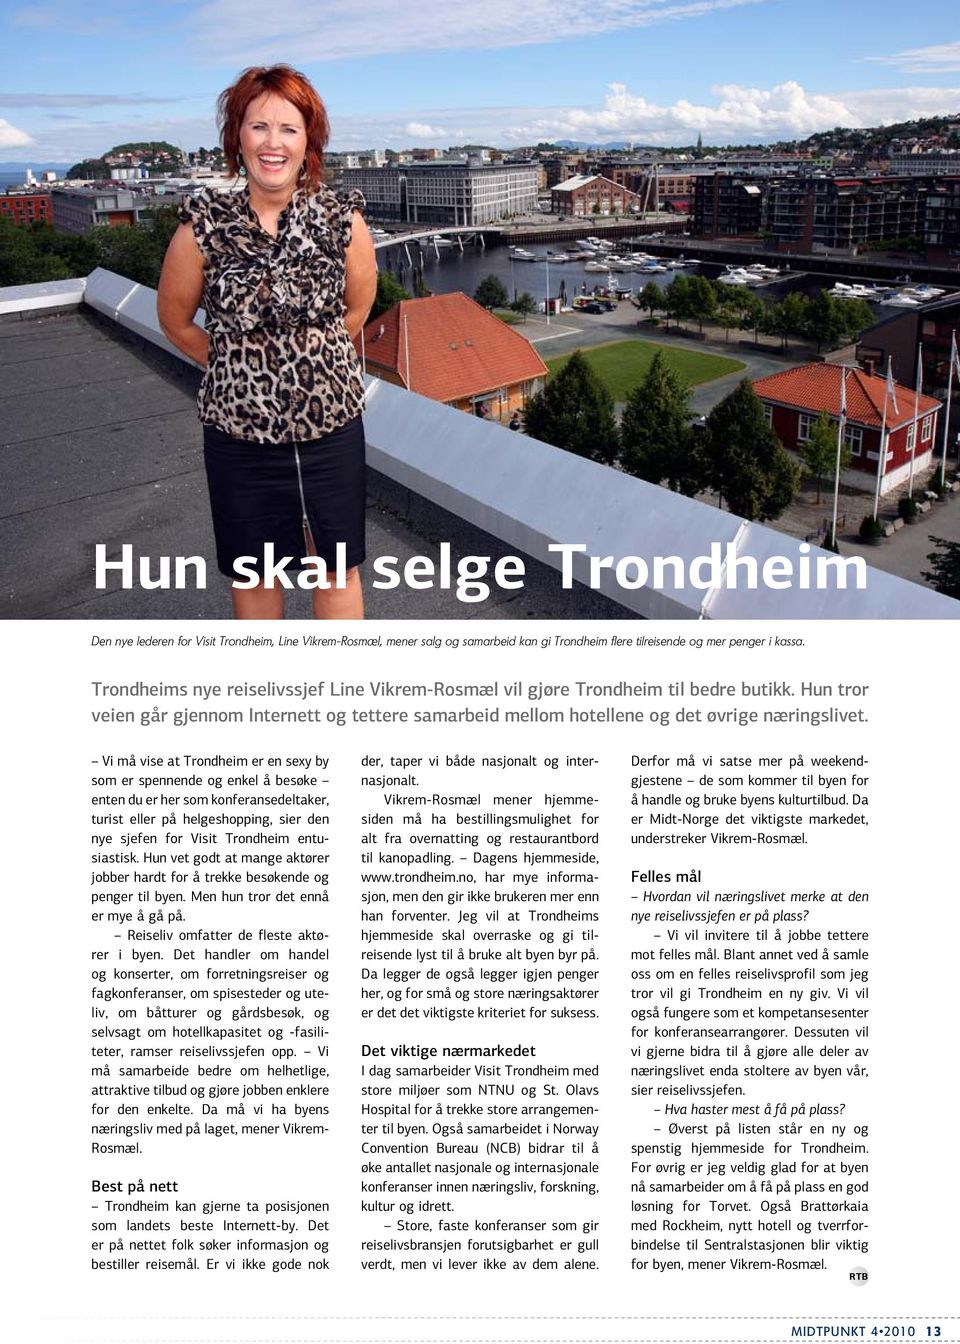 Vi må vise at Trondheim er en sexy by som er spennende og enkel å besøke enten du er her som konferanse deltaker, turist eller på helgeshopping, sier den nye sjefen for Visit Trondheim entusiastisk.